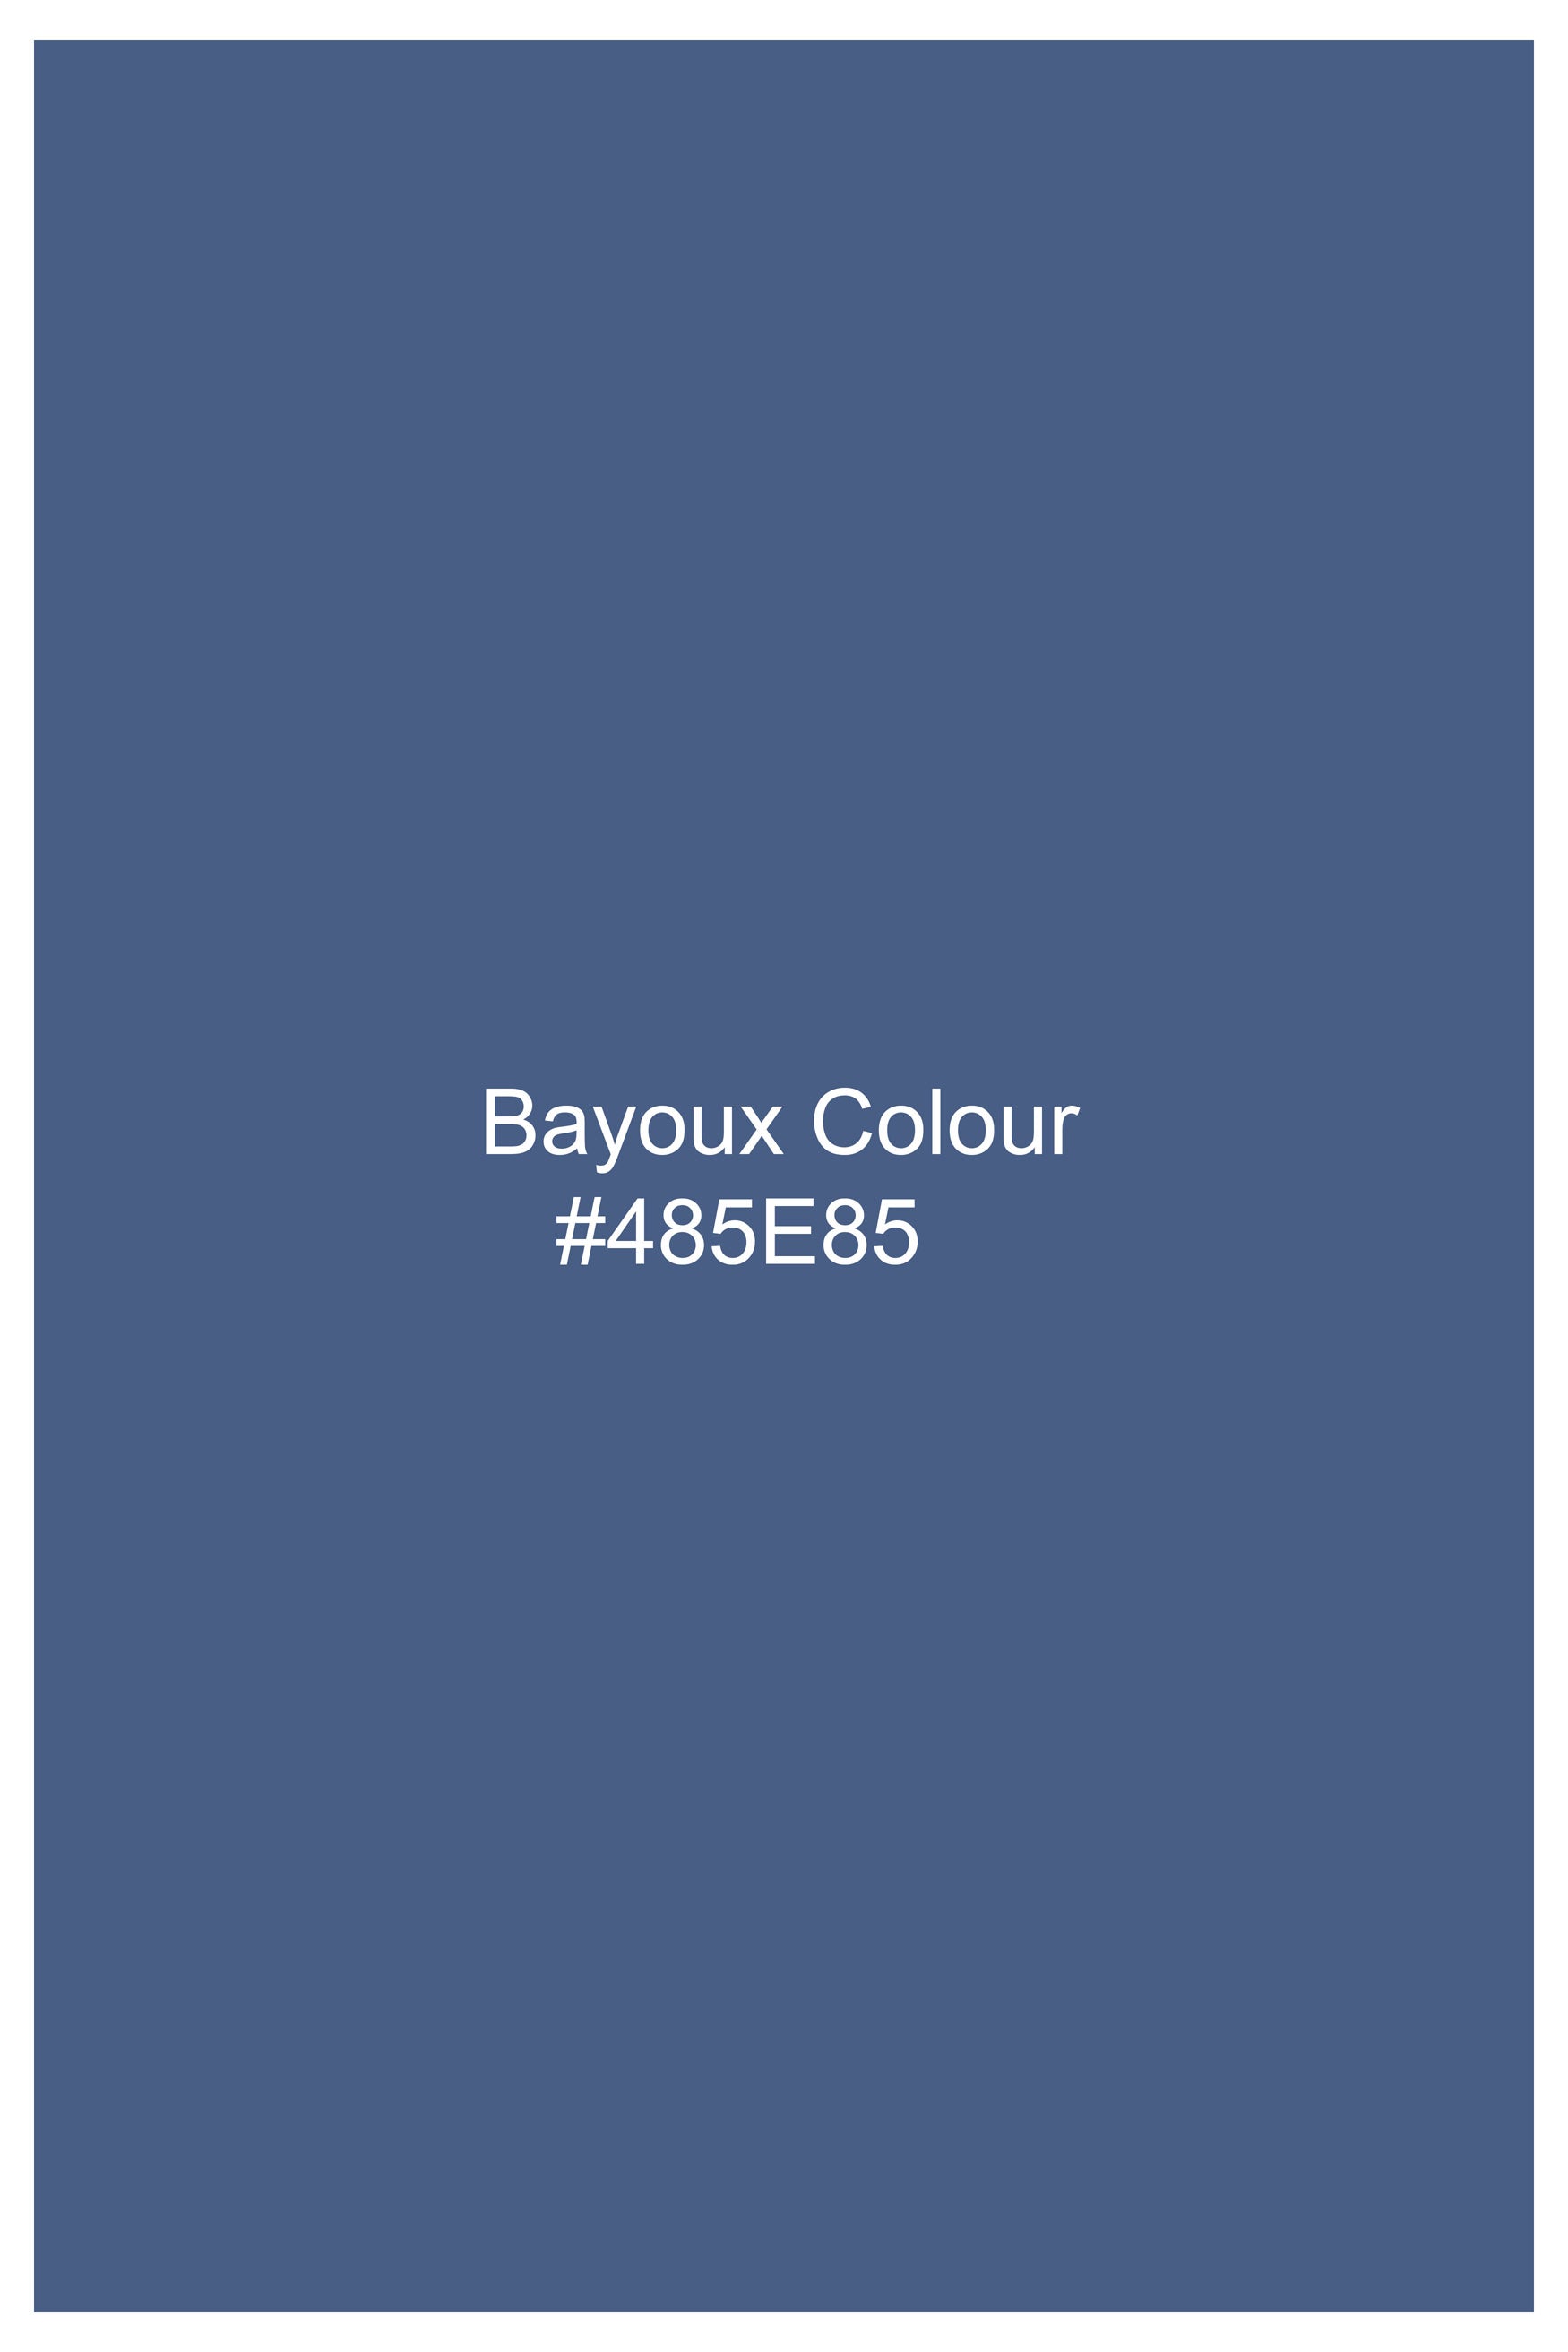 Bayoux Blue Royal Oxford Button Down Shirt 11870-BD-38, 11870-BD-H-38, 11870-BD-39, 11870-BD-H-39, 11870-BD-40, 11870-BD-H-40, 11870-BD-42, 11870-BD-H-42, 11870-BD-44, 11870-BD-H-44, 11870-BD-46, 11870-BD-H-46, 11870-BD-48, 11870-BD-H-48, 11870-BD-50, 11870-BD-H-50, 11870-BD-52, 11870-BD-H-52